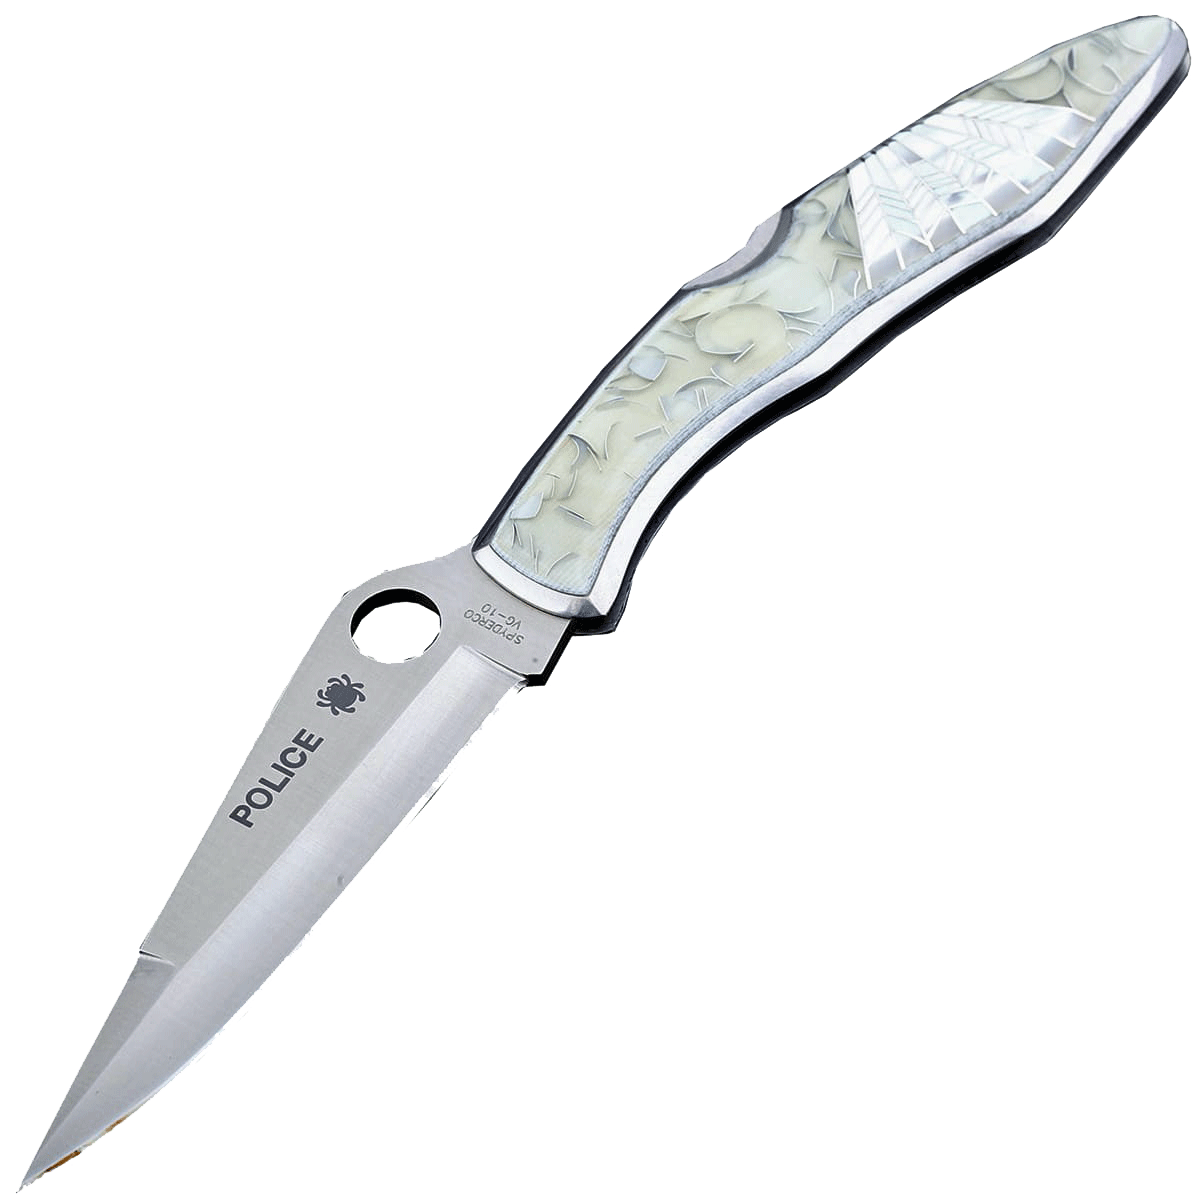 Складной нож Santa Fe Spyderco Police, сталь VG-10, рукоять сталь с накладкой из акрила/перламутра